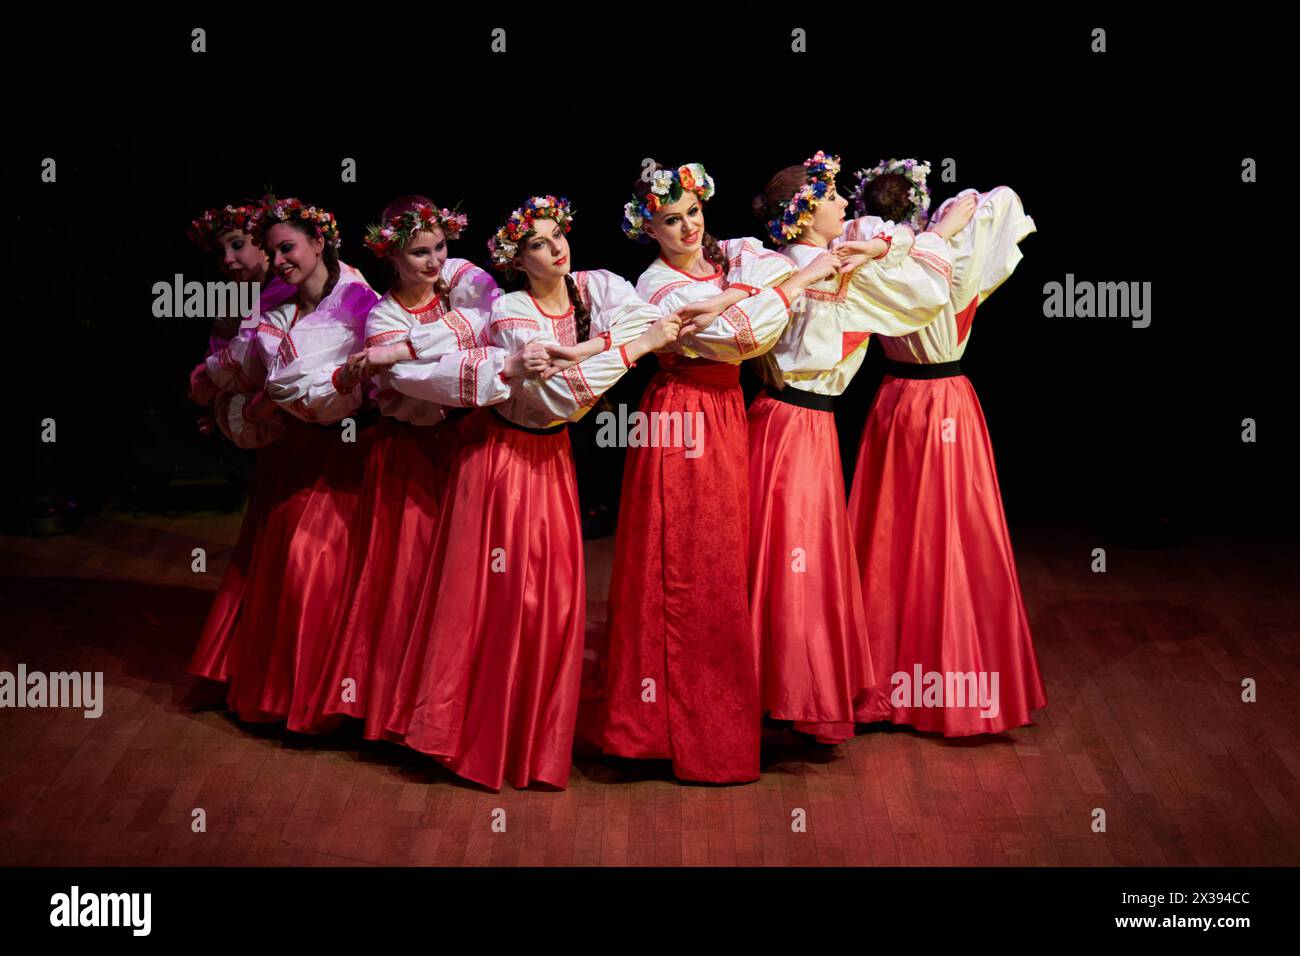 MOSCOU, RUSSIE - 21 MAI 2016 : des filles en jupes rouges, des chemisiers blancs brodés et avec des couronnes sur la tête dansent la danse folklorique russe pendant le concert Banque D'Images